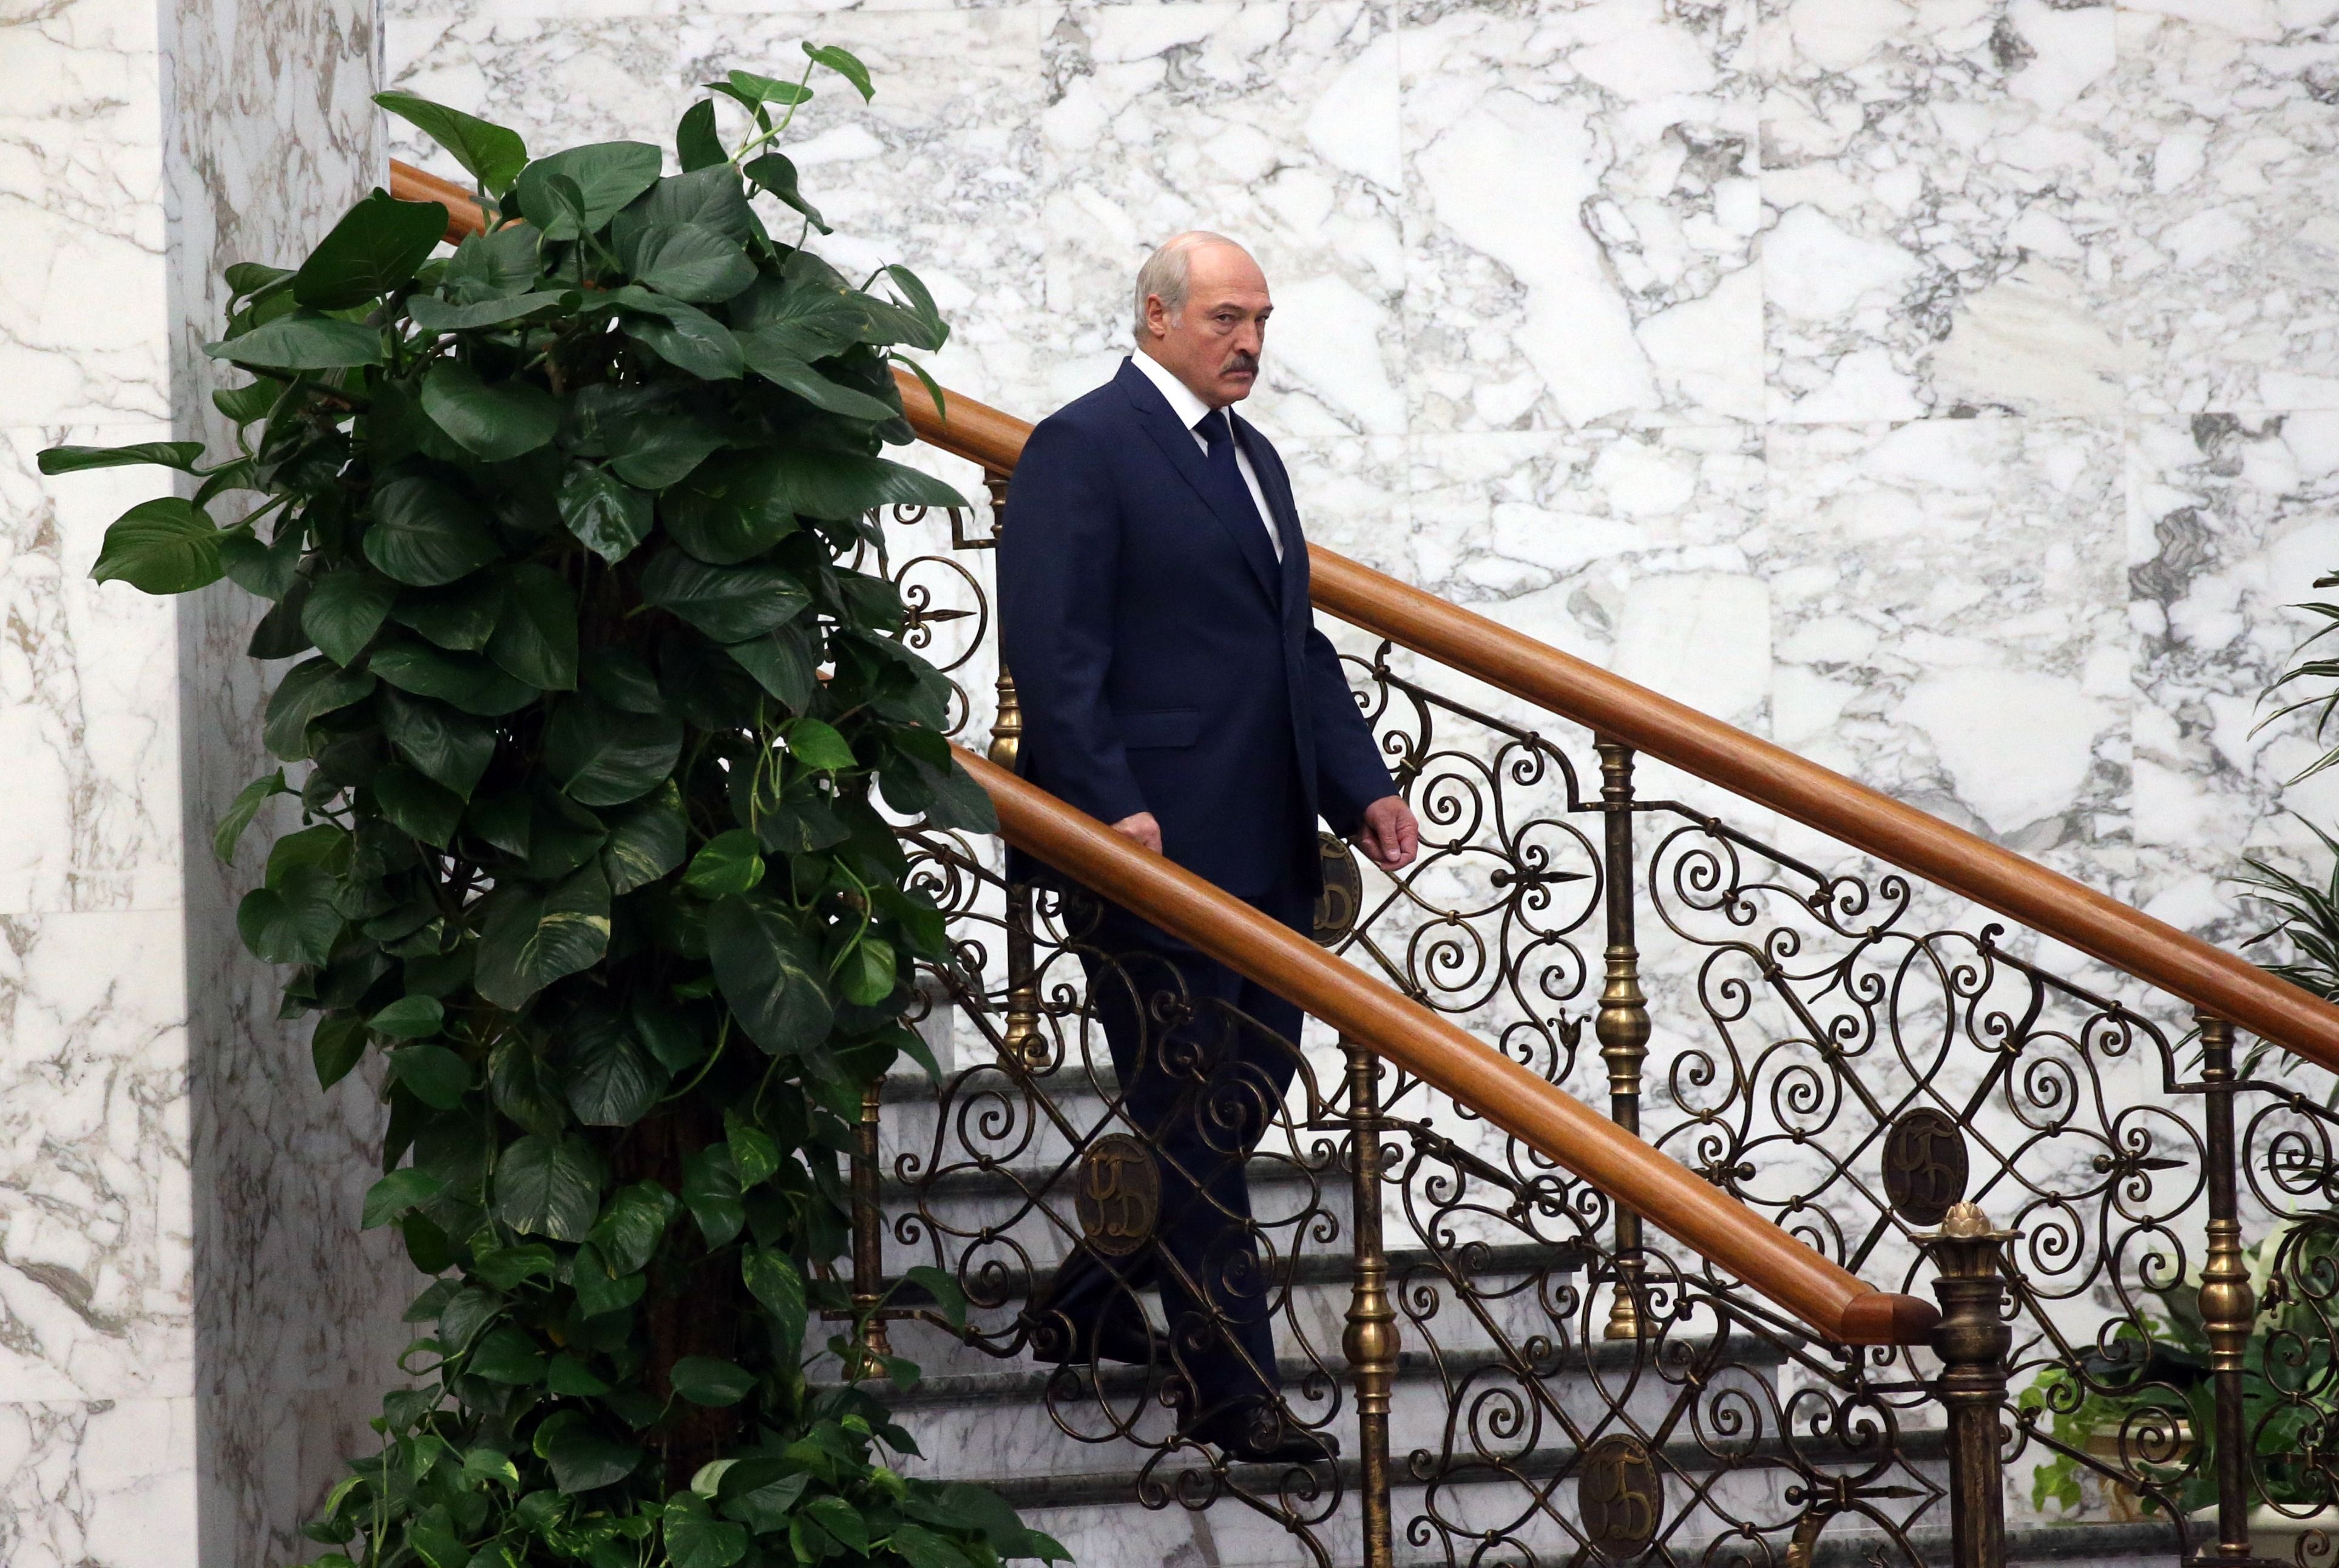 Лукашенко растерян, – Латушко об абсурдных заявлениях самопровозглашенного президента